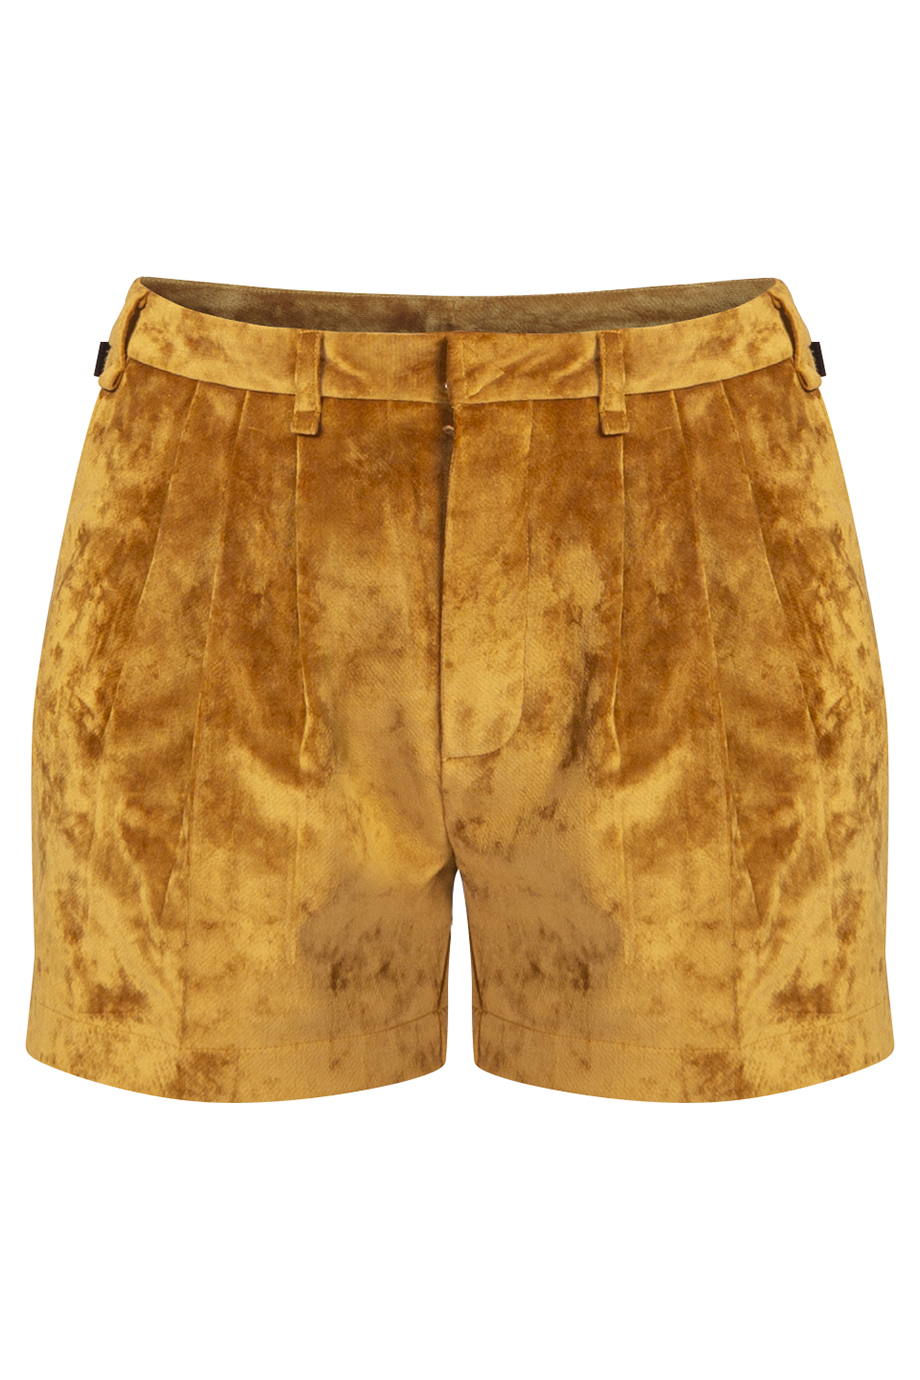 Quần Anise Short Pants/ Gold